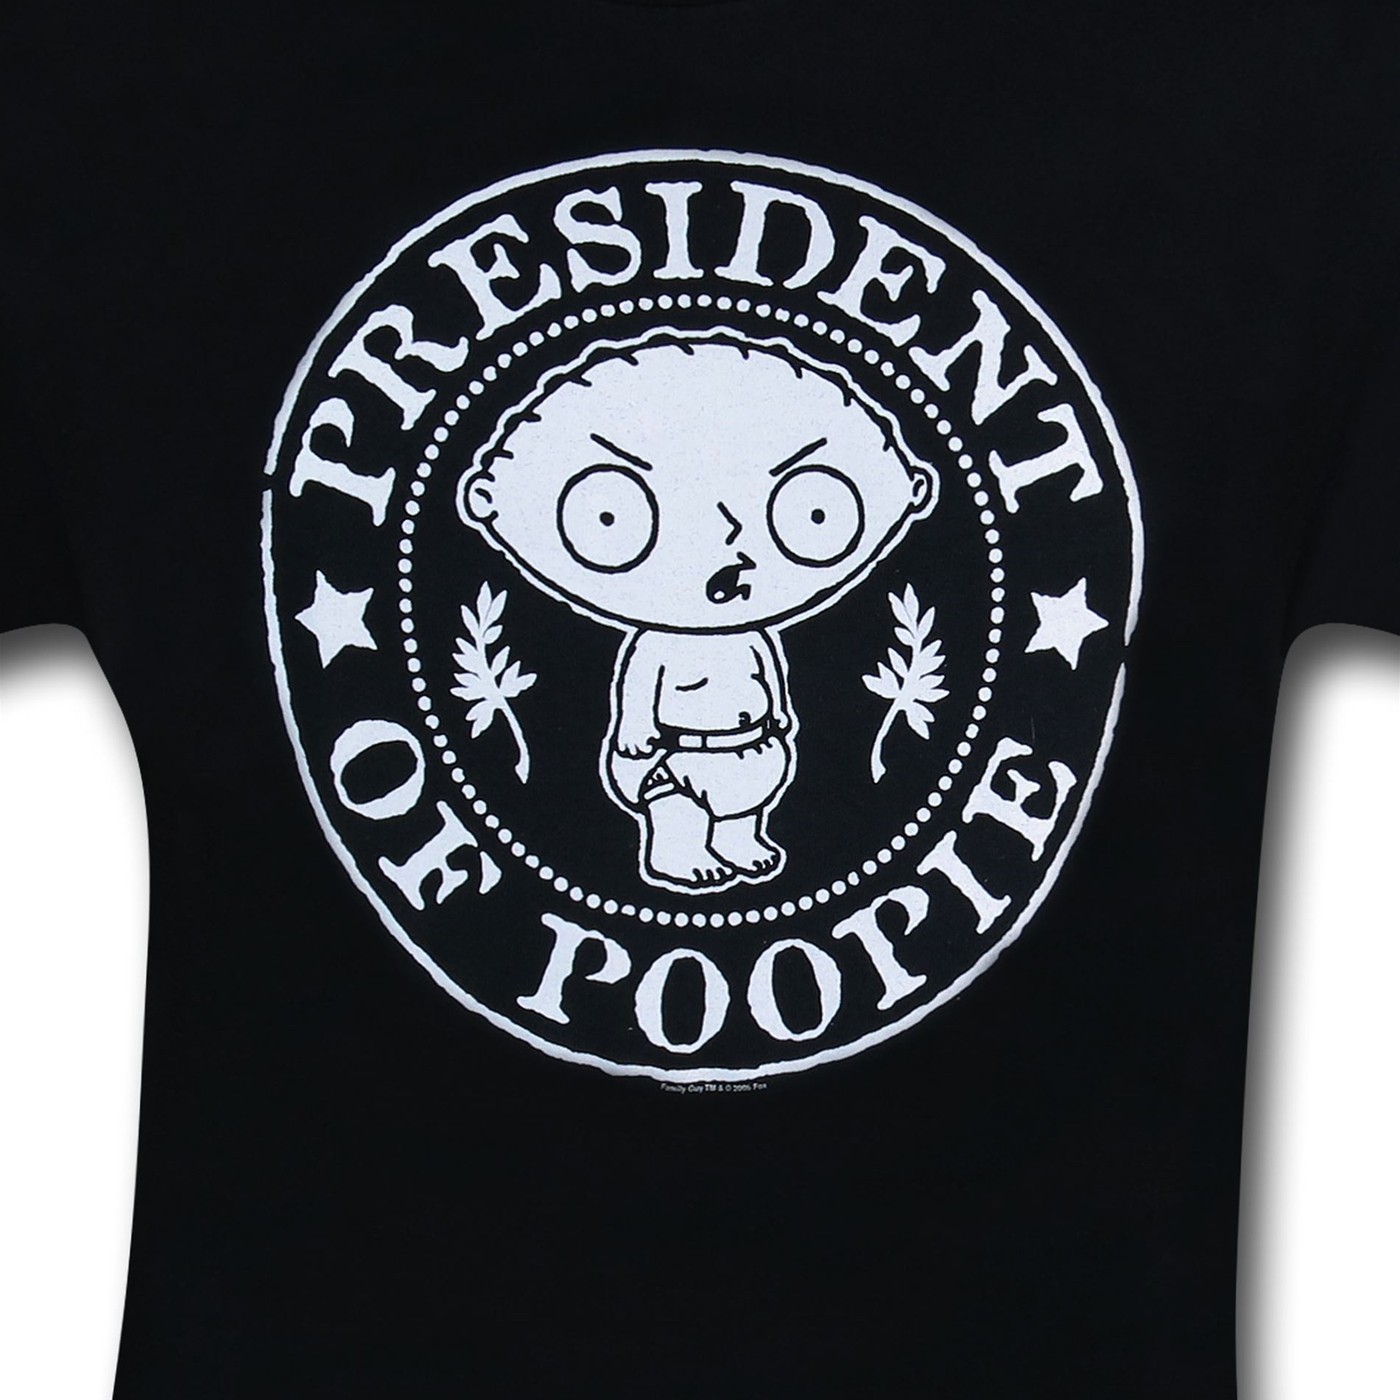 The Family Guy President of Poopie T-Shirt